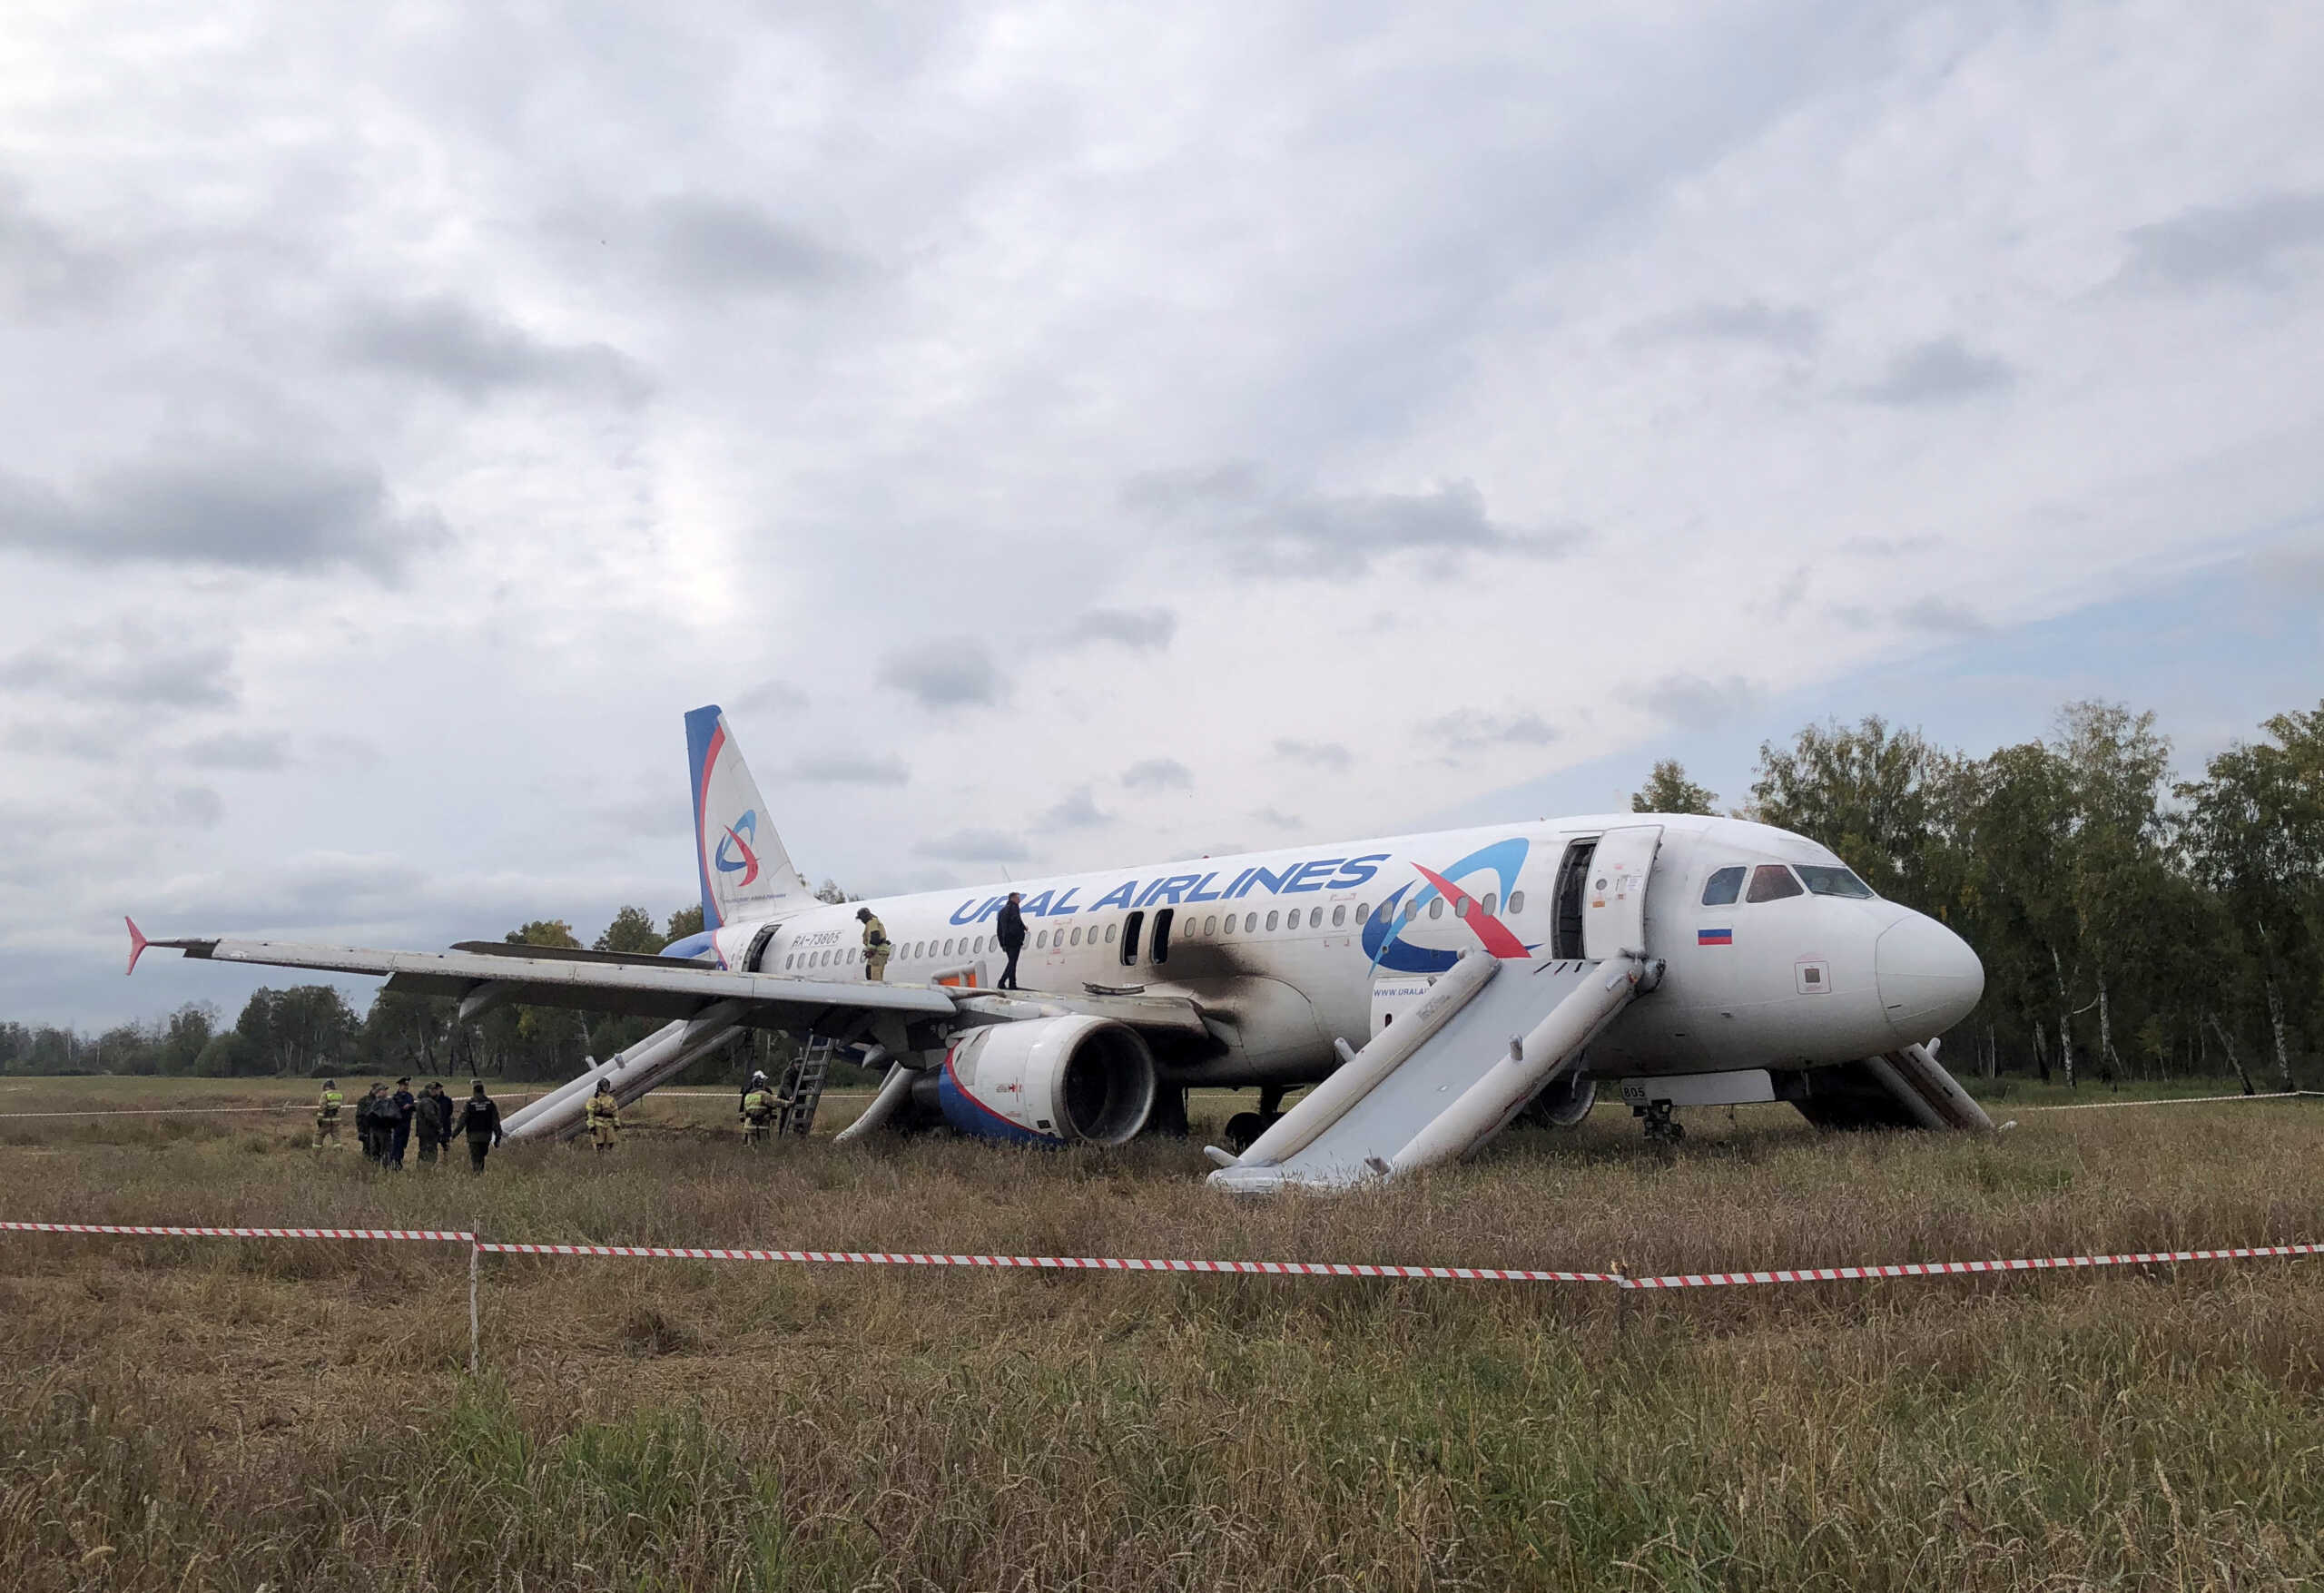 Ρωσία: Βλάβη στο υδραυλικό σύστημα για το Airbus που έκανε αναγκαστική προσγείωση σε χωράφι